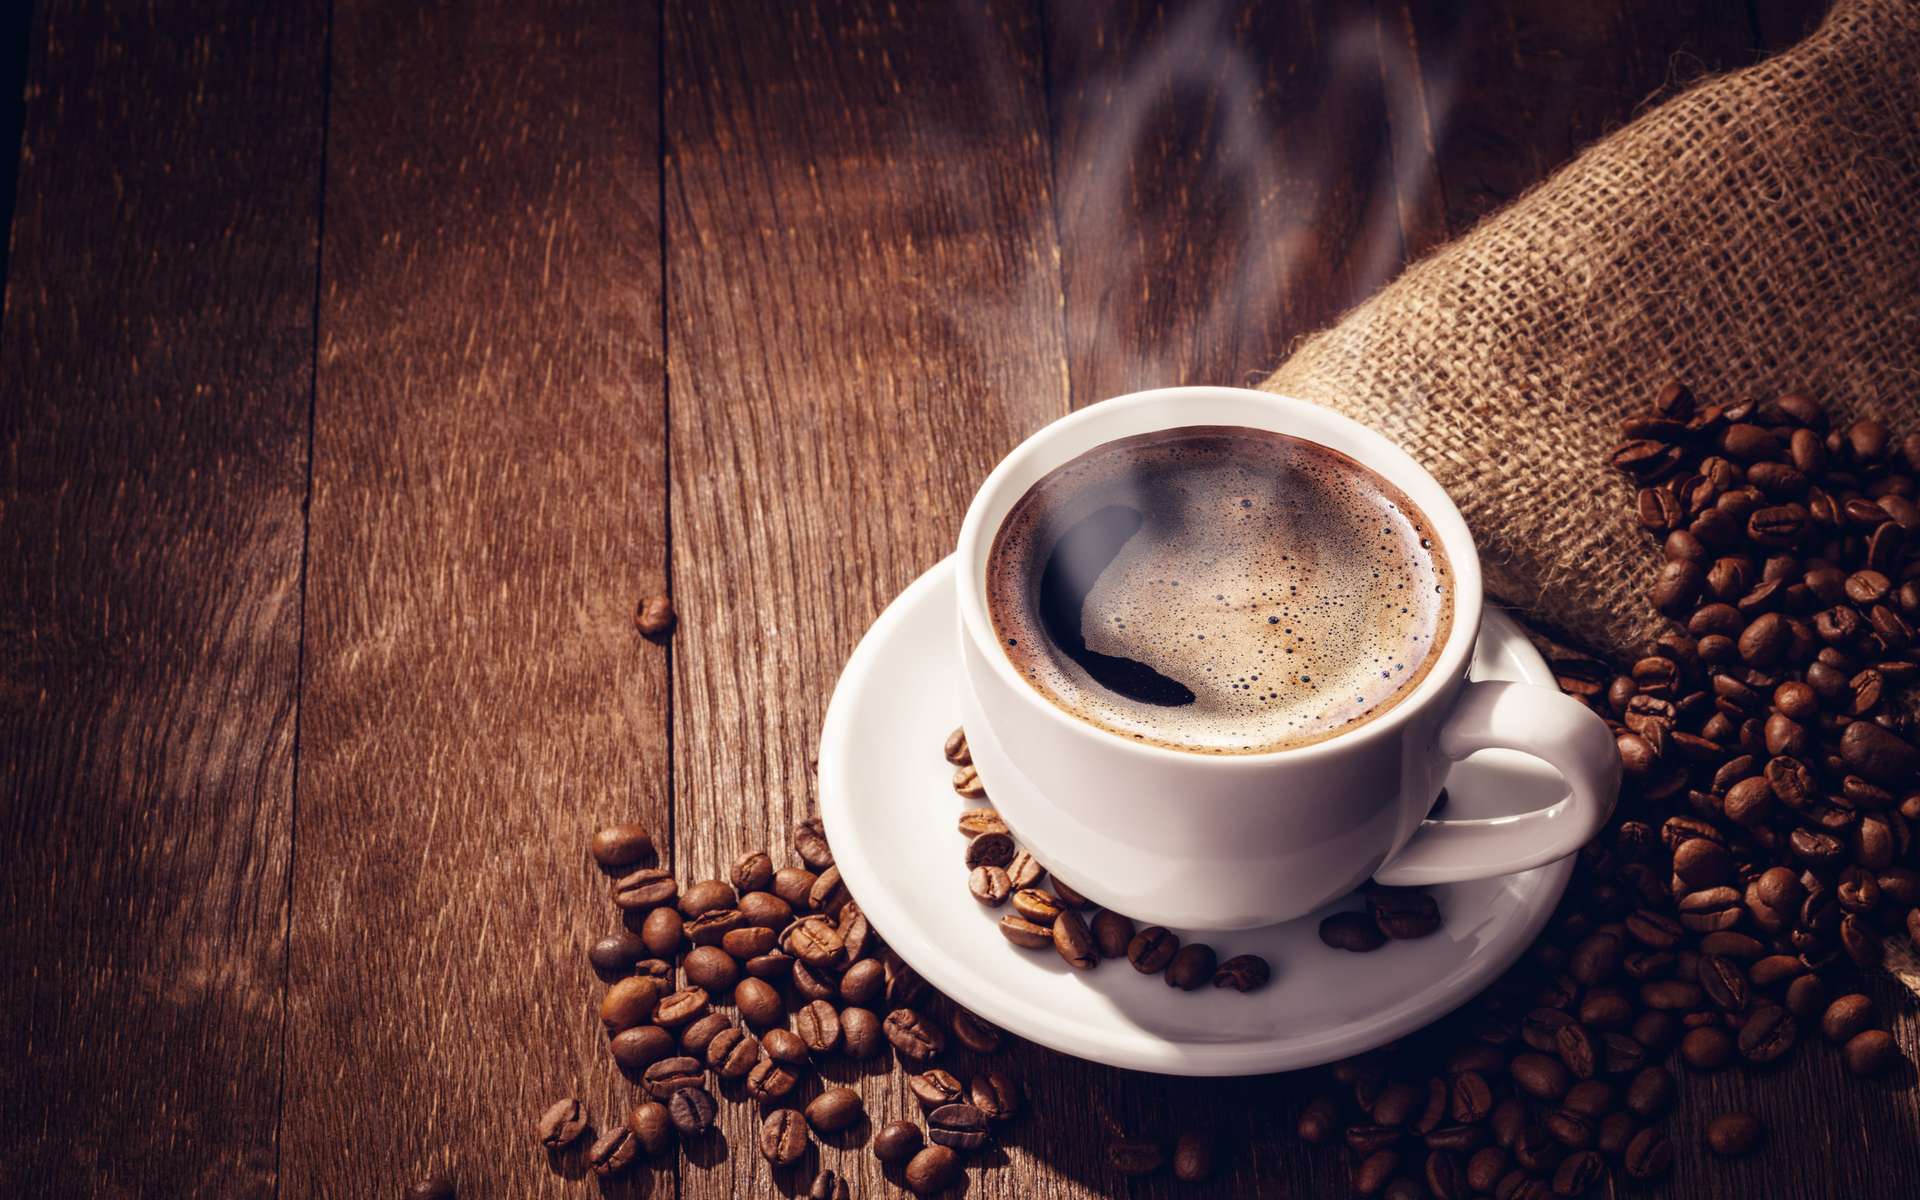 Le café est l’une des boissons les plus consommées dans le monde. Il a un rôle stimulant bien connu et permettrait aussi d’améliorer la mémoire. © dimakp, Adobe Stock